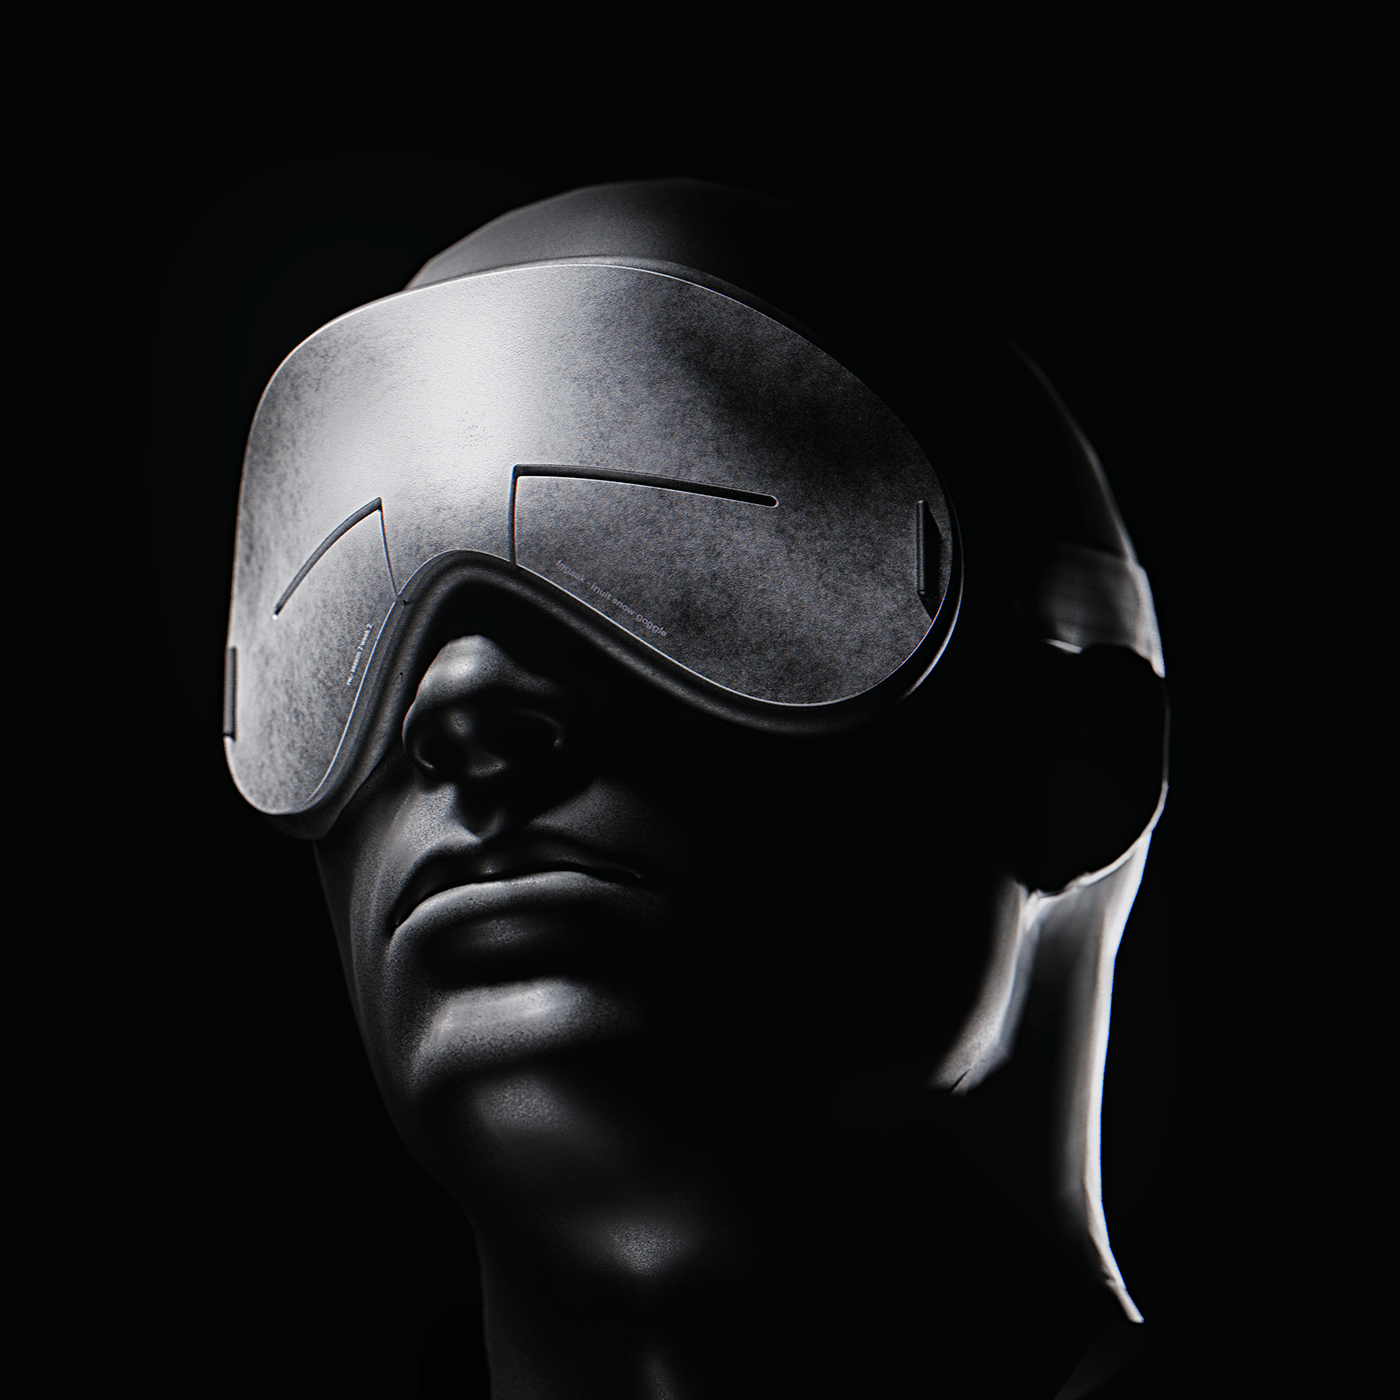 3D blender CGI design goggles industrial design  modern product design  Render visualization